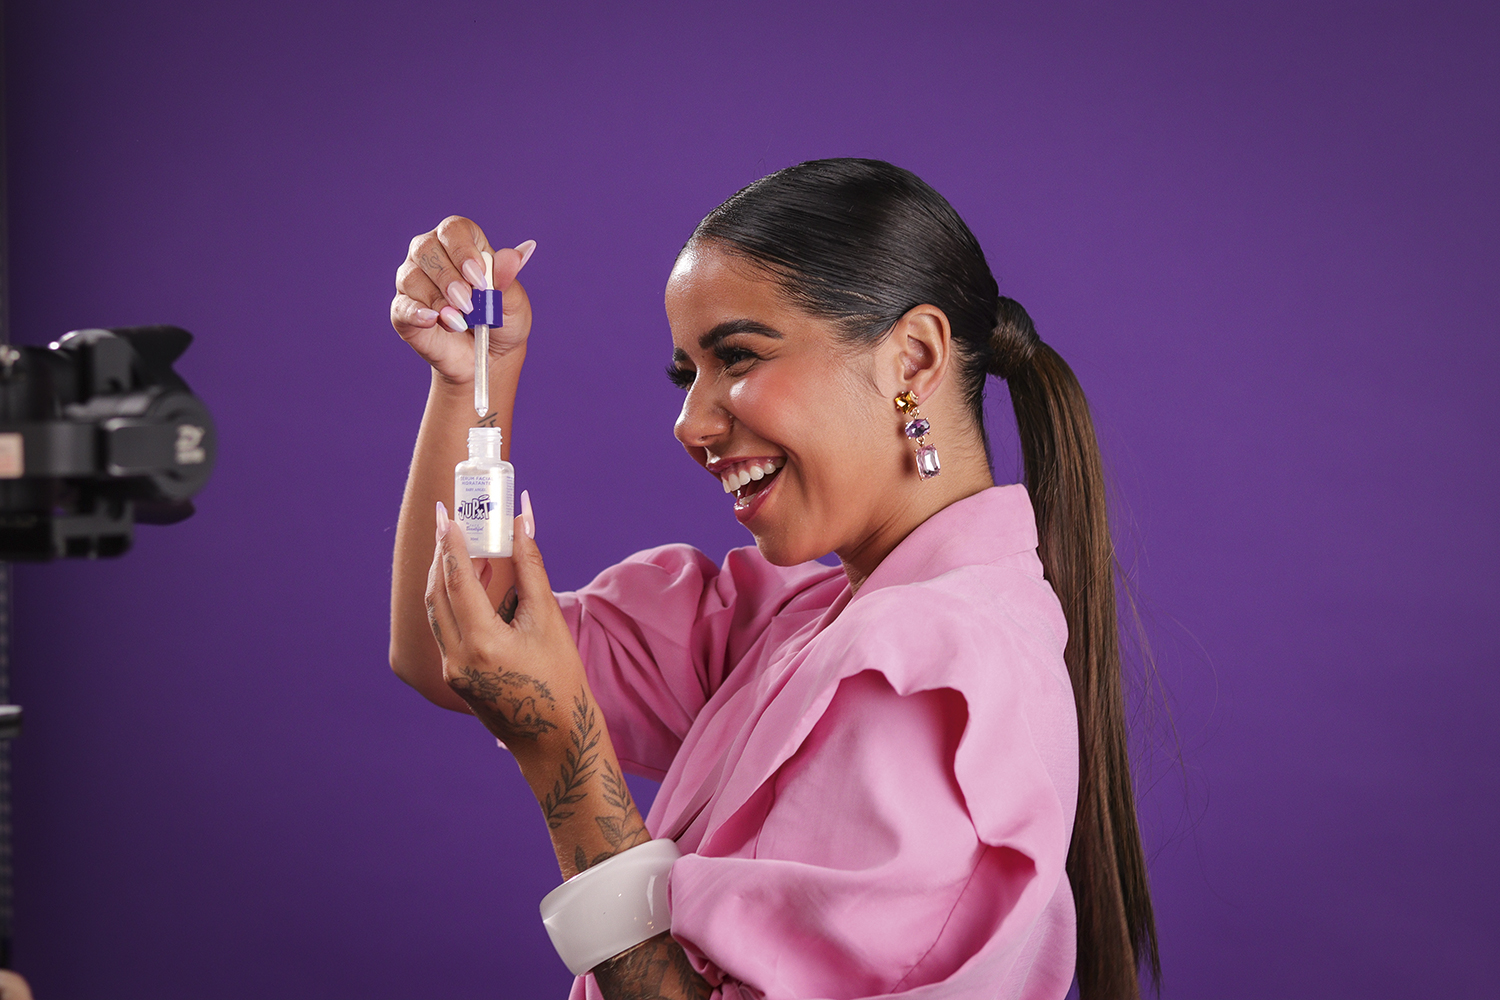 Júlia Peixoto de lado, segurando um frasco de maquiagem